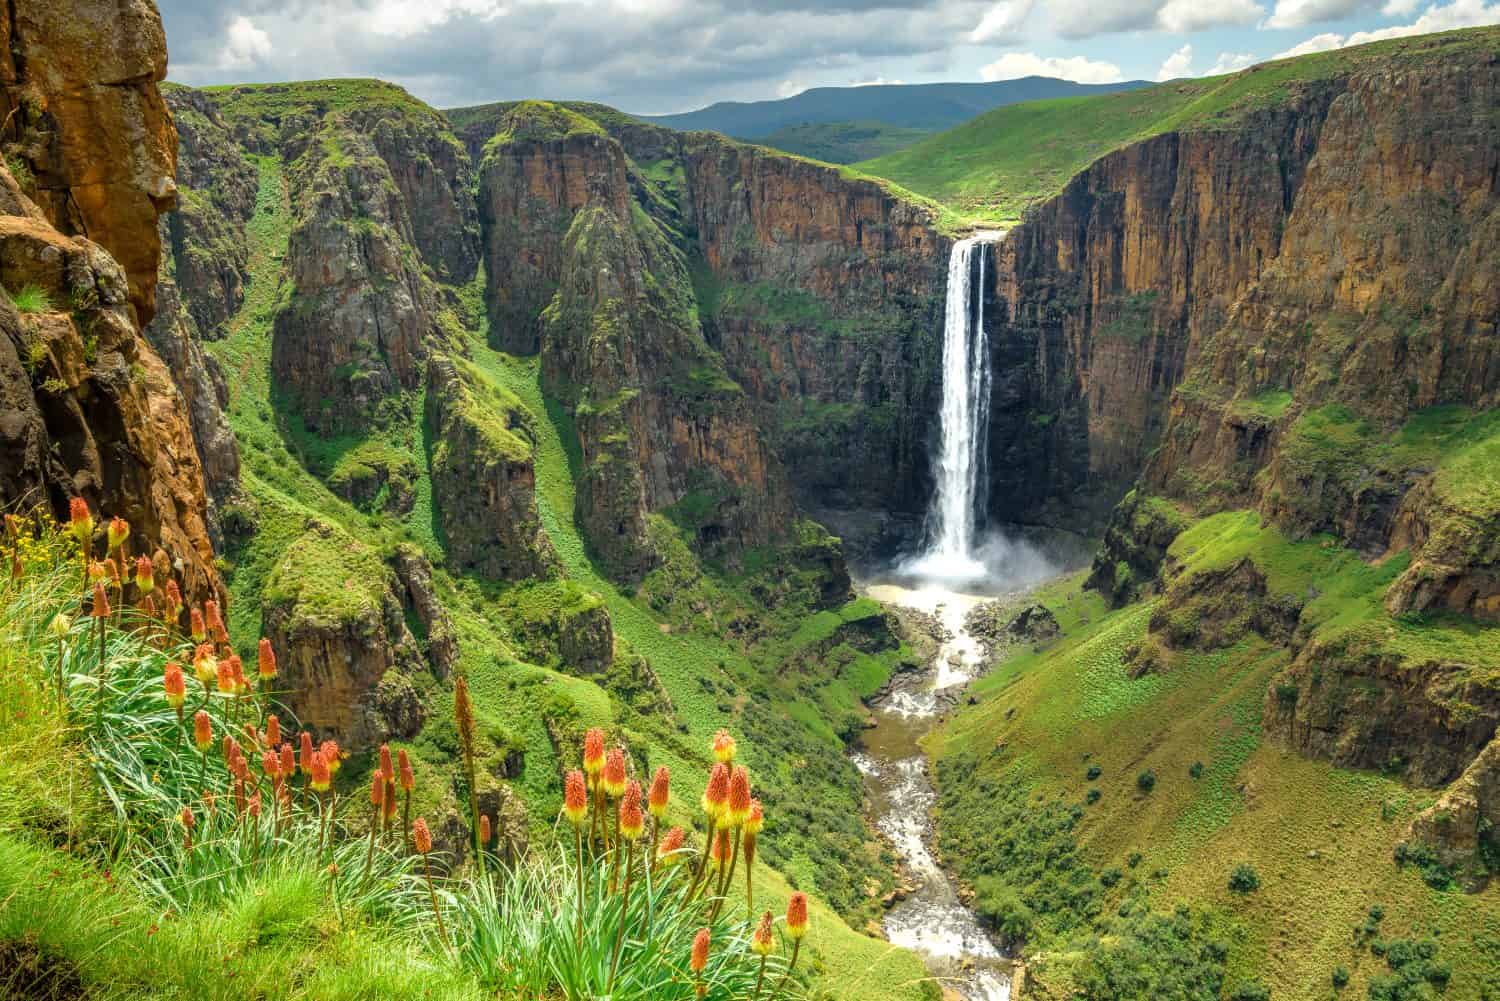 Cascate Maletsunyane nel Lesotho Africa.  La cascata più bella del mondo.  Paesaggio verde scenico di incredibili cascate d'acqua che cadono in un fiume all'interno dei canyon.  Viste panoramiche sulle grandi cascate.